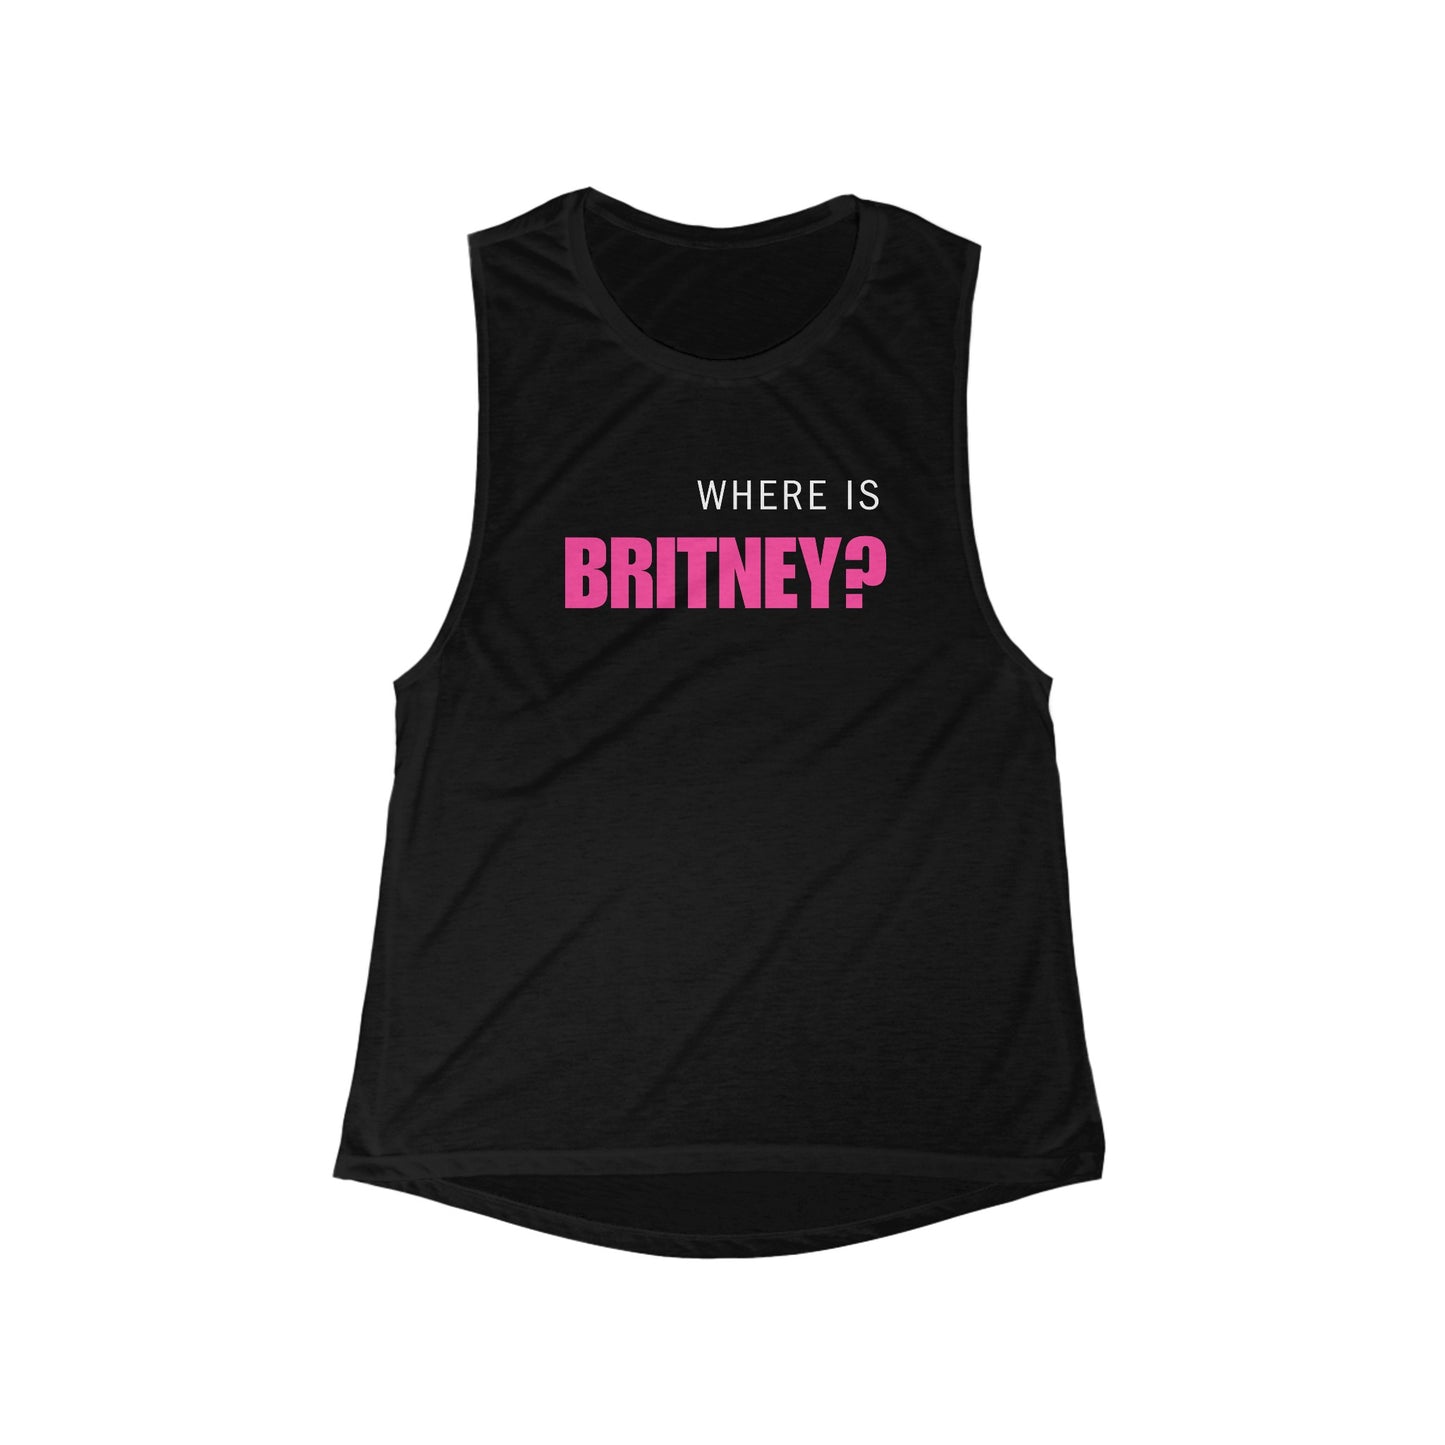 Where is Britney? Flowy Scoop Muscle Tank